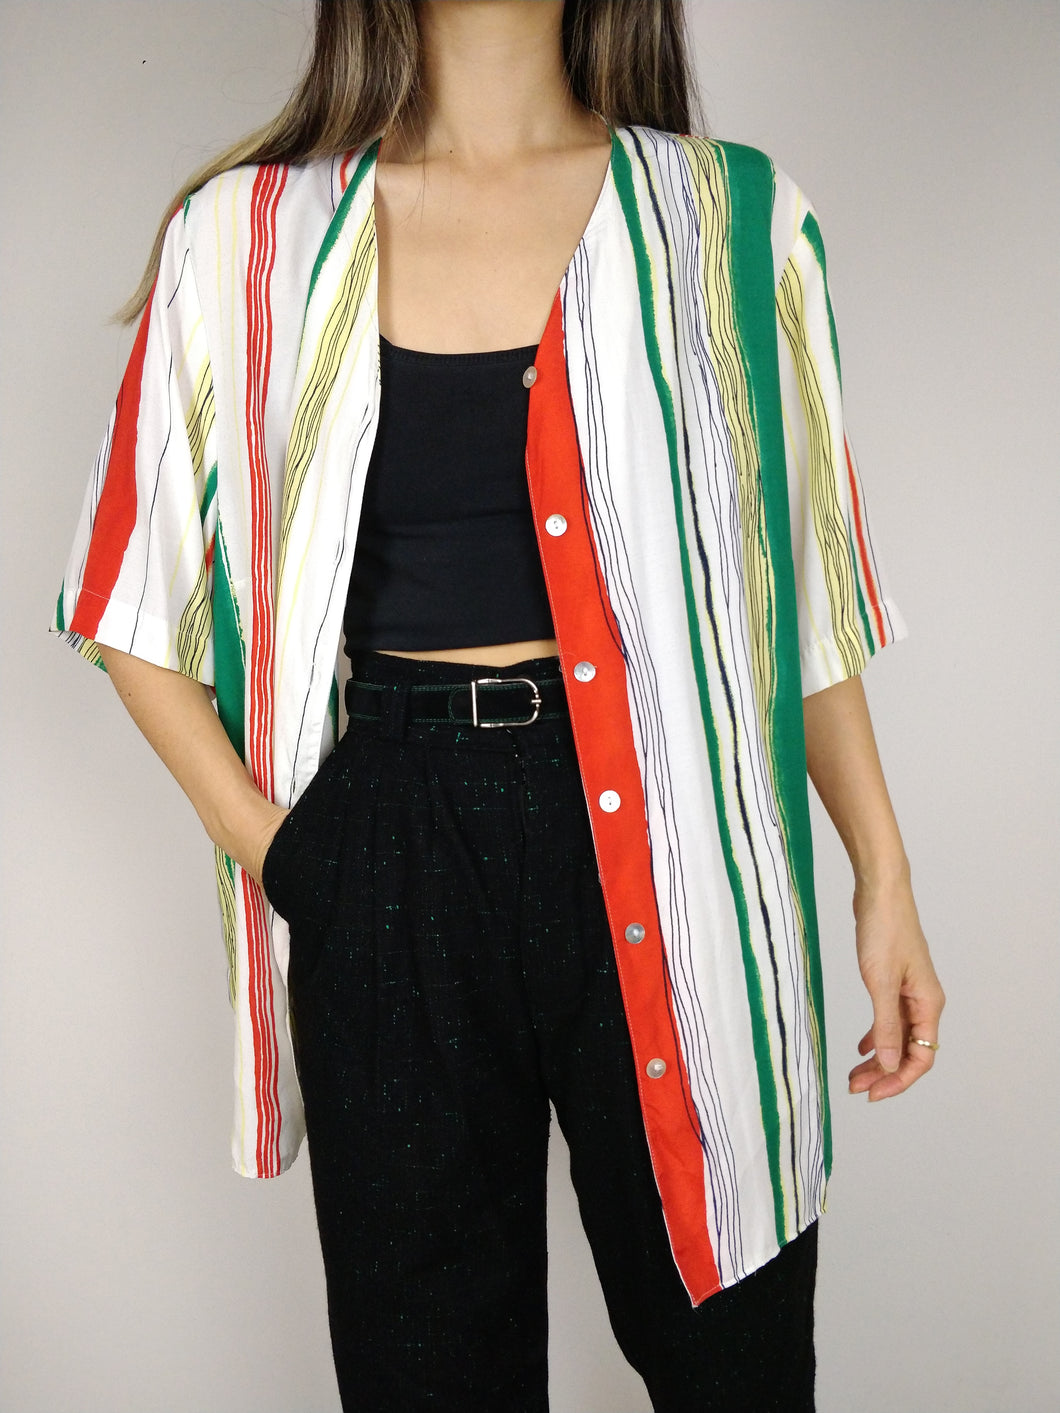 Die Funky Stripe Bluse | Vintage Hemdbluse gestreift Kurzarm weiß gelb orange grün oversized Viskose L-XL